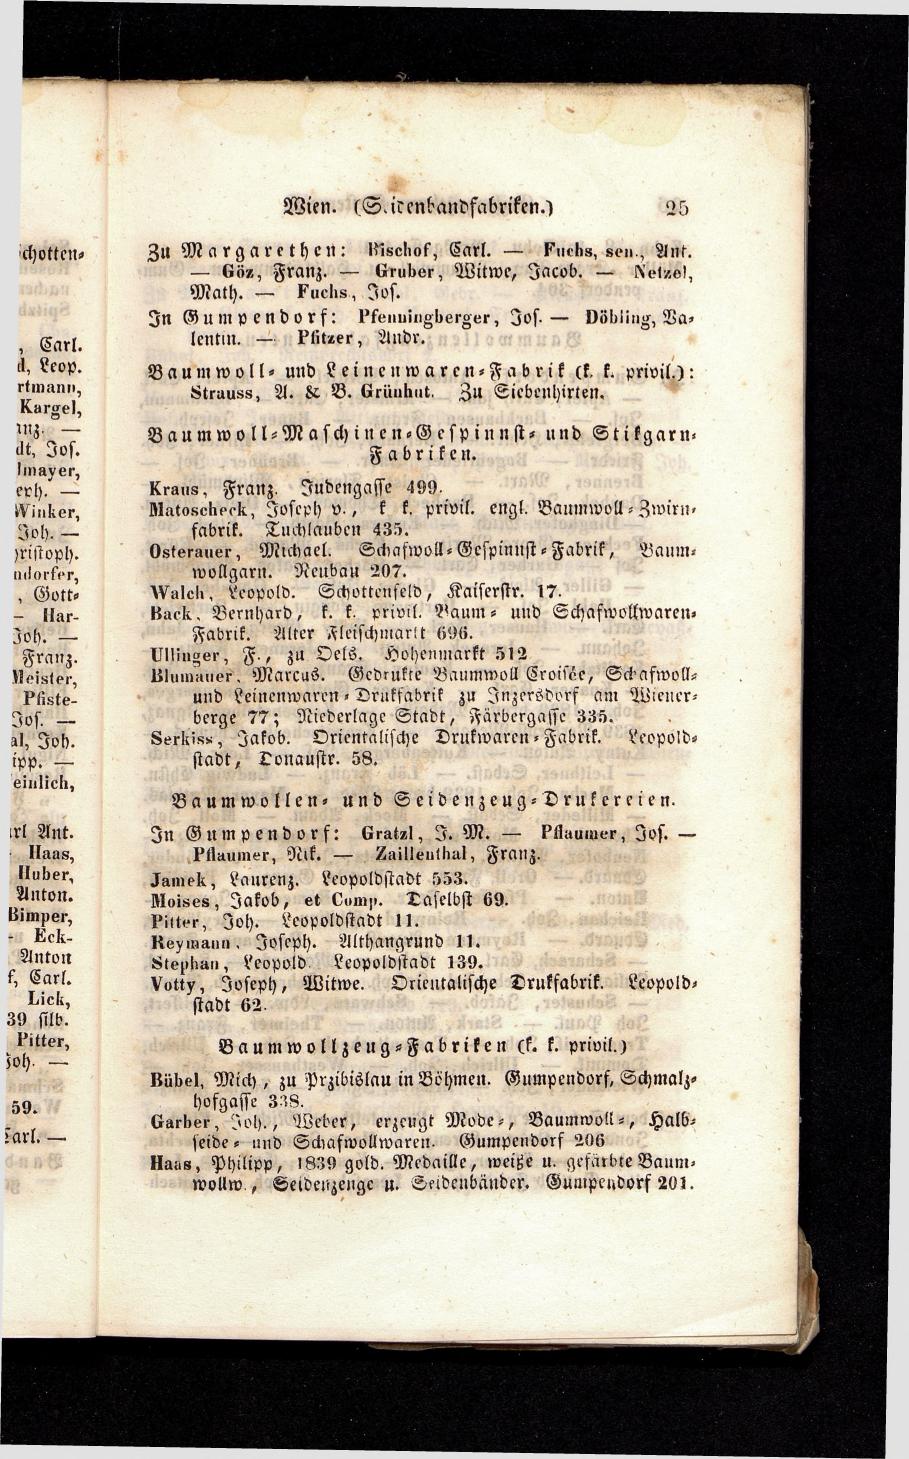 Grosses Adressbuch der Kaufleute. No. 13. Oesterreich ober u. unter der Enns 1844 - Seite 29